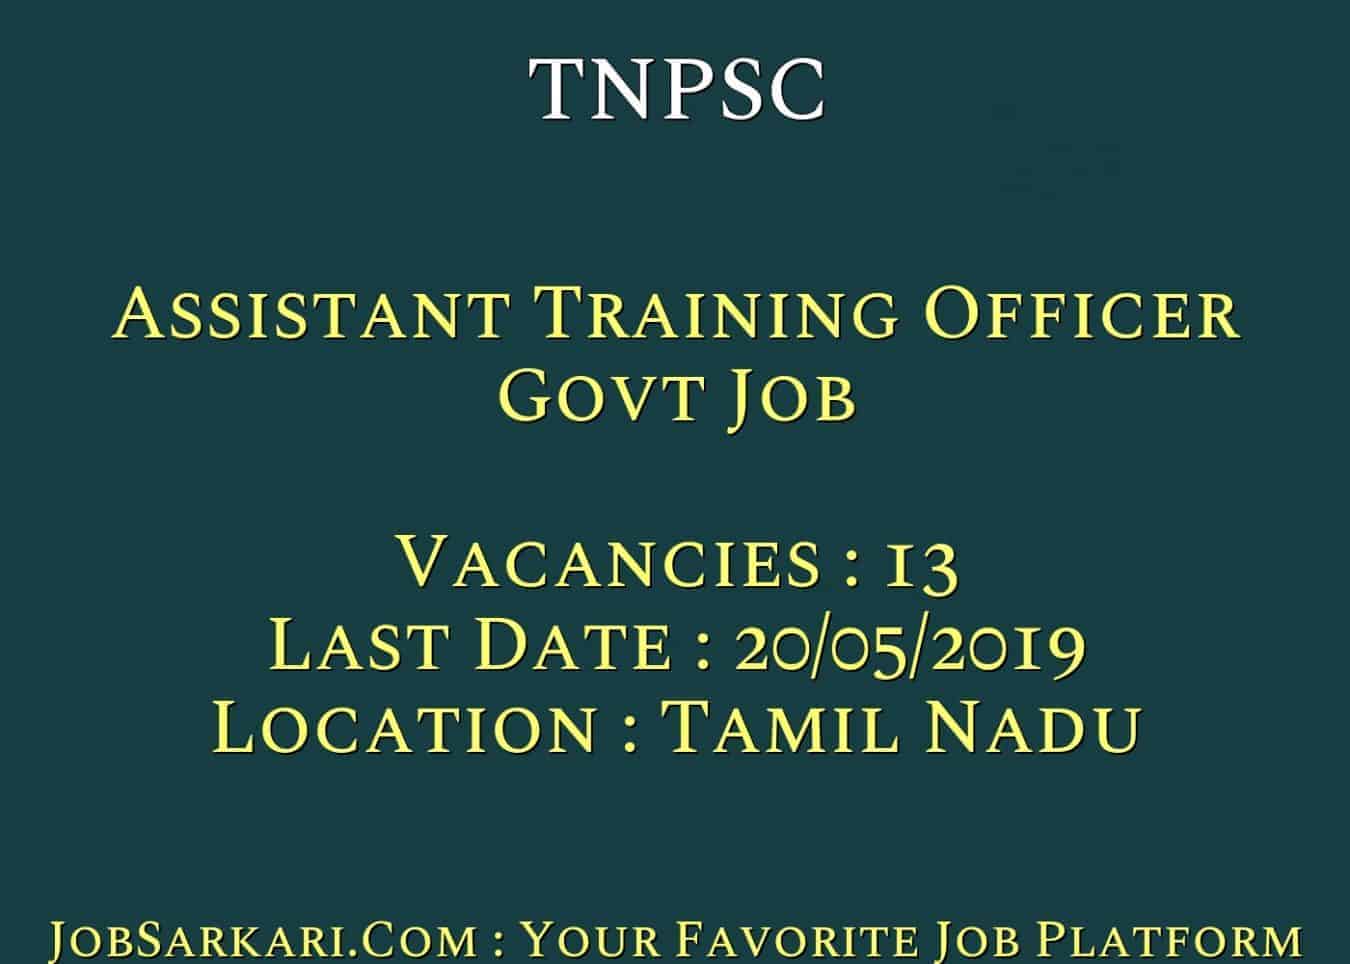 TNPSC Recruitment 2019 For Assistant Training Officer Govt Job